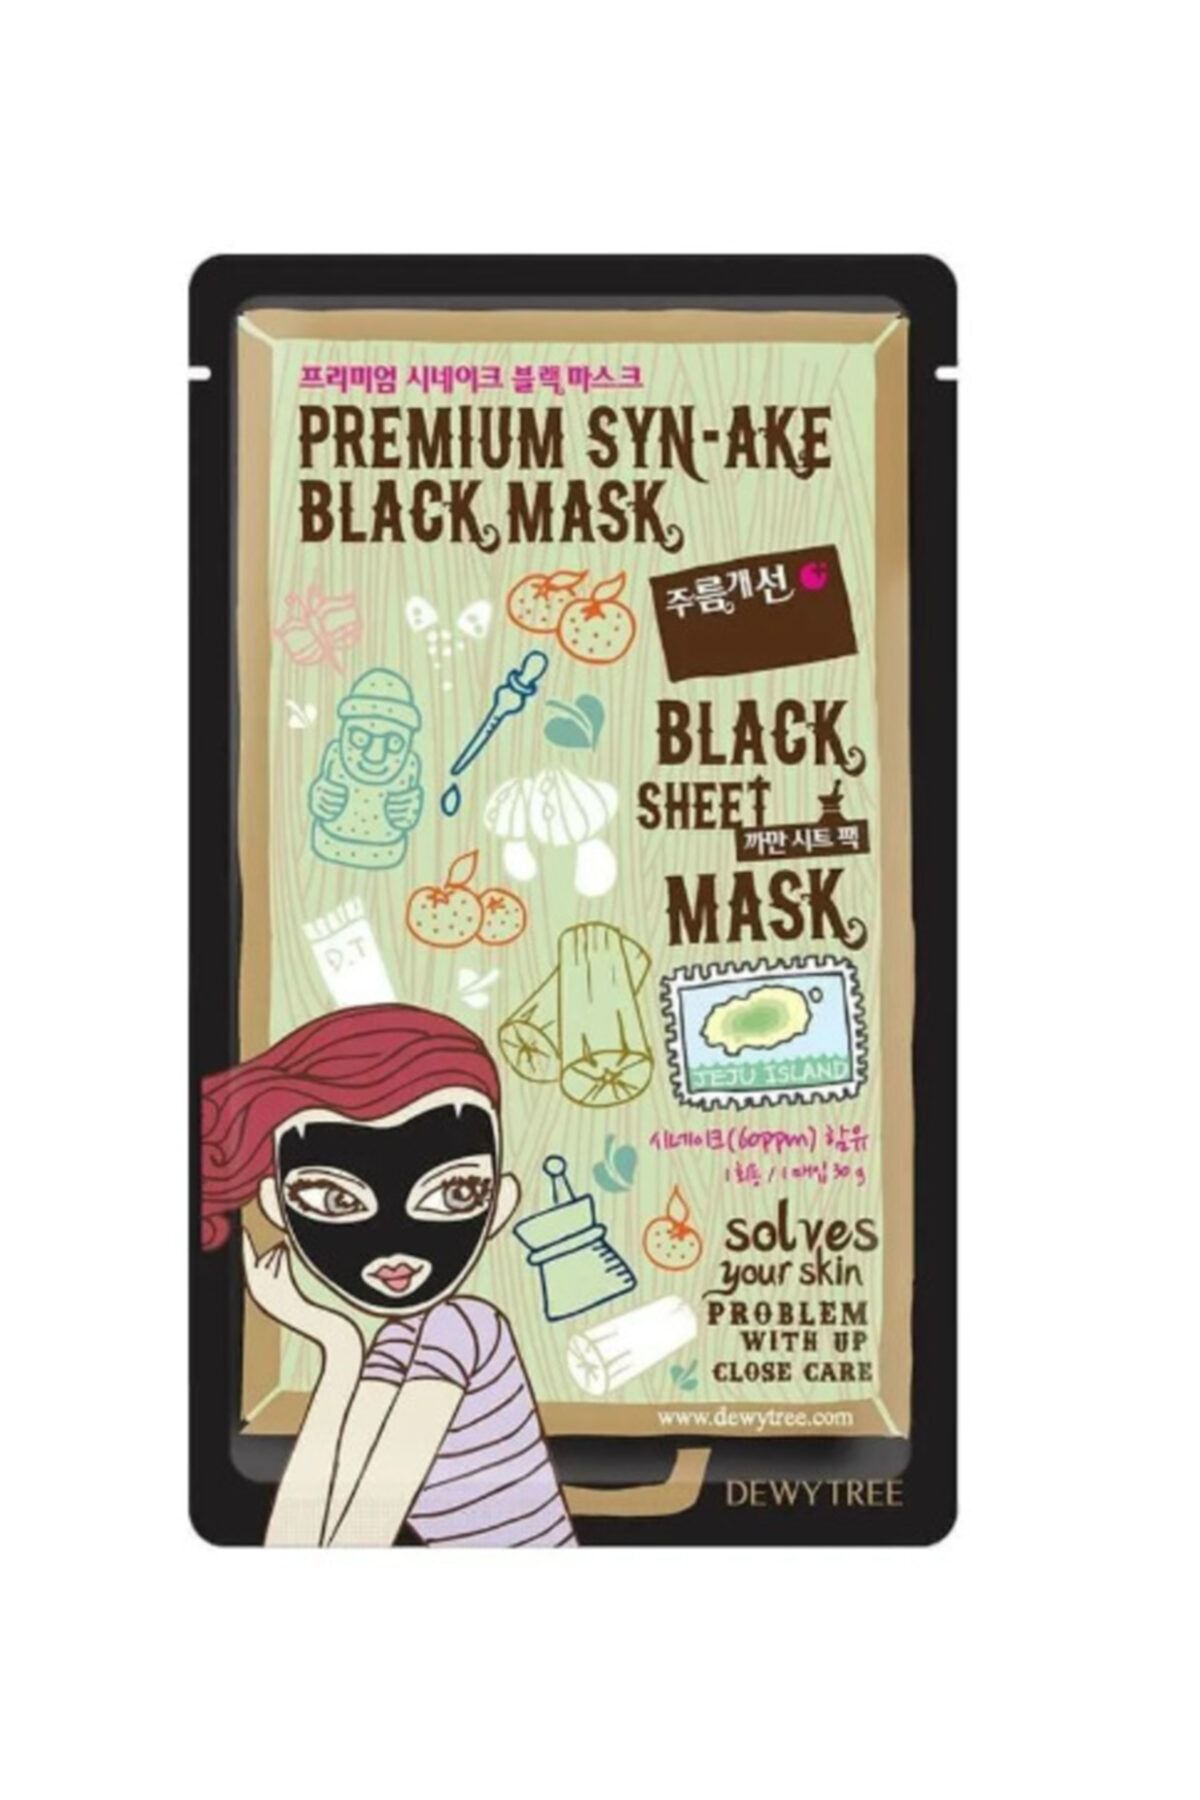 DEWYTREE Premıum Syn-ake Black Maske